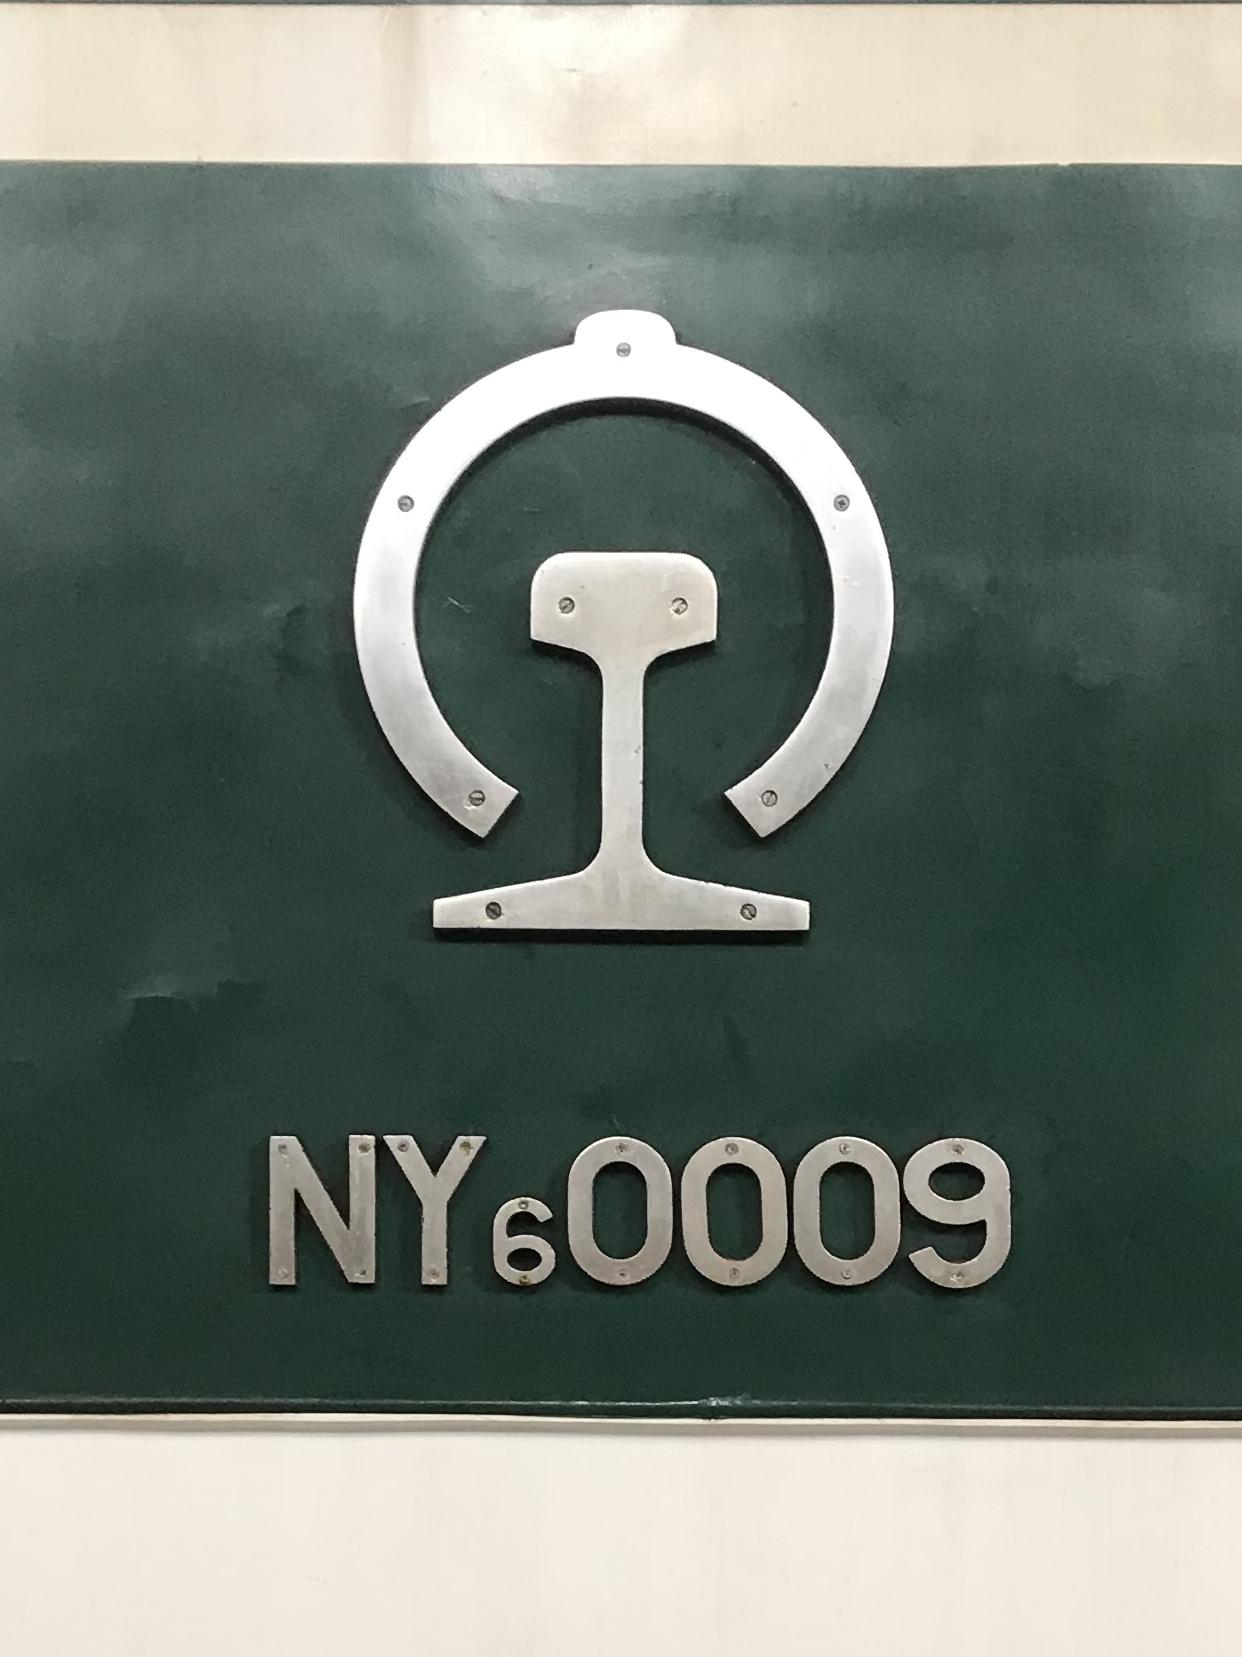 NY6型0009號機車中間的路徽